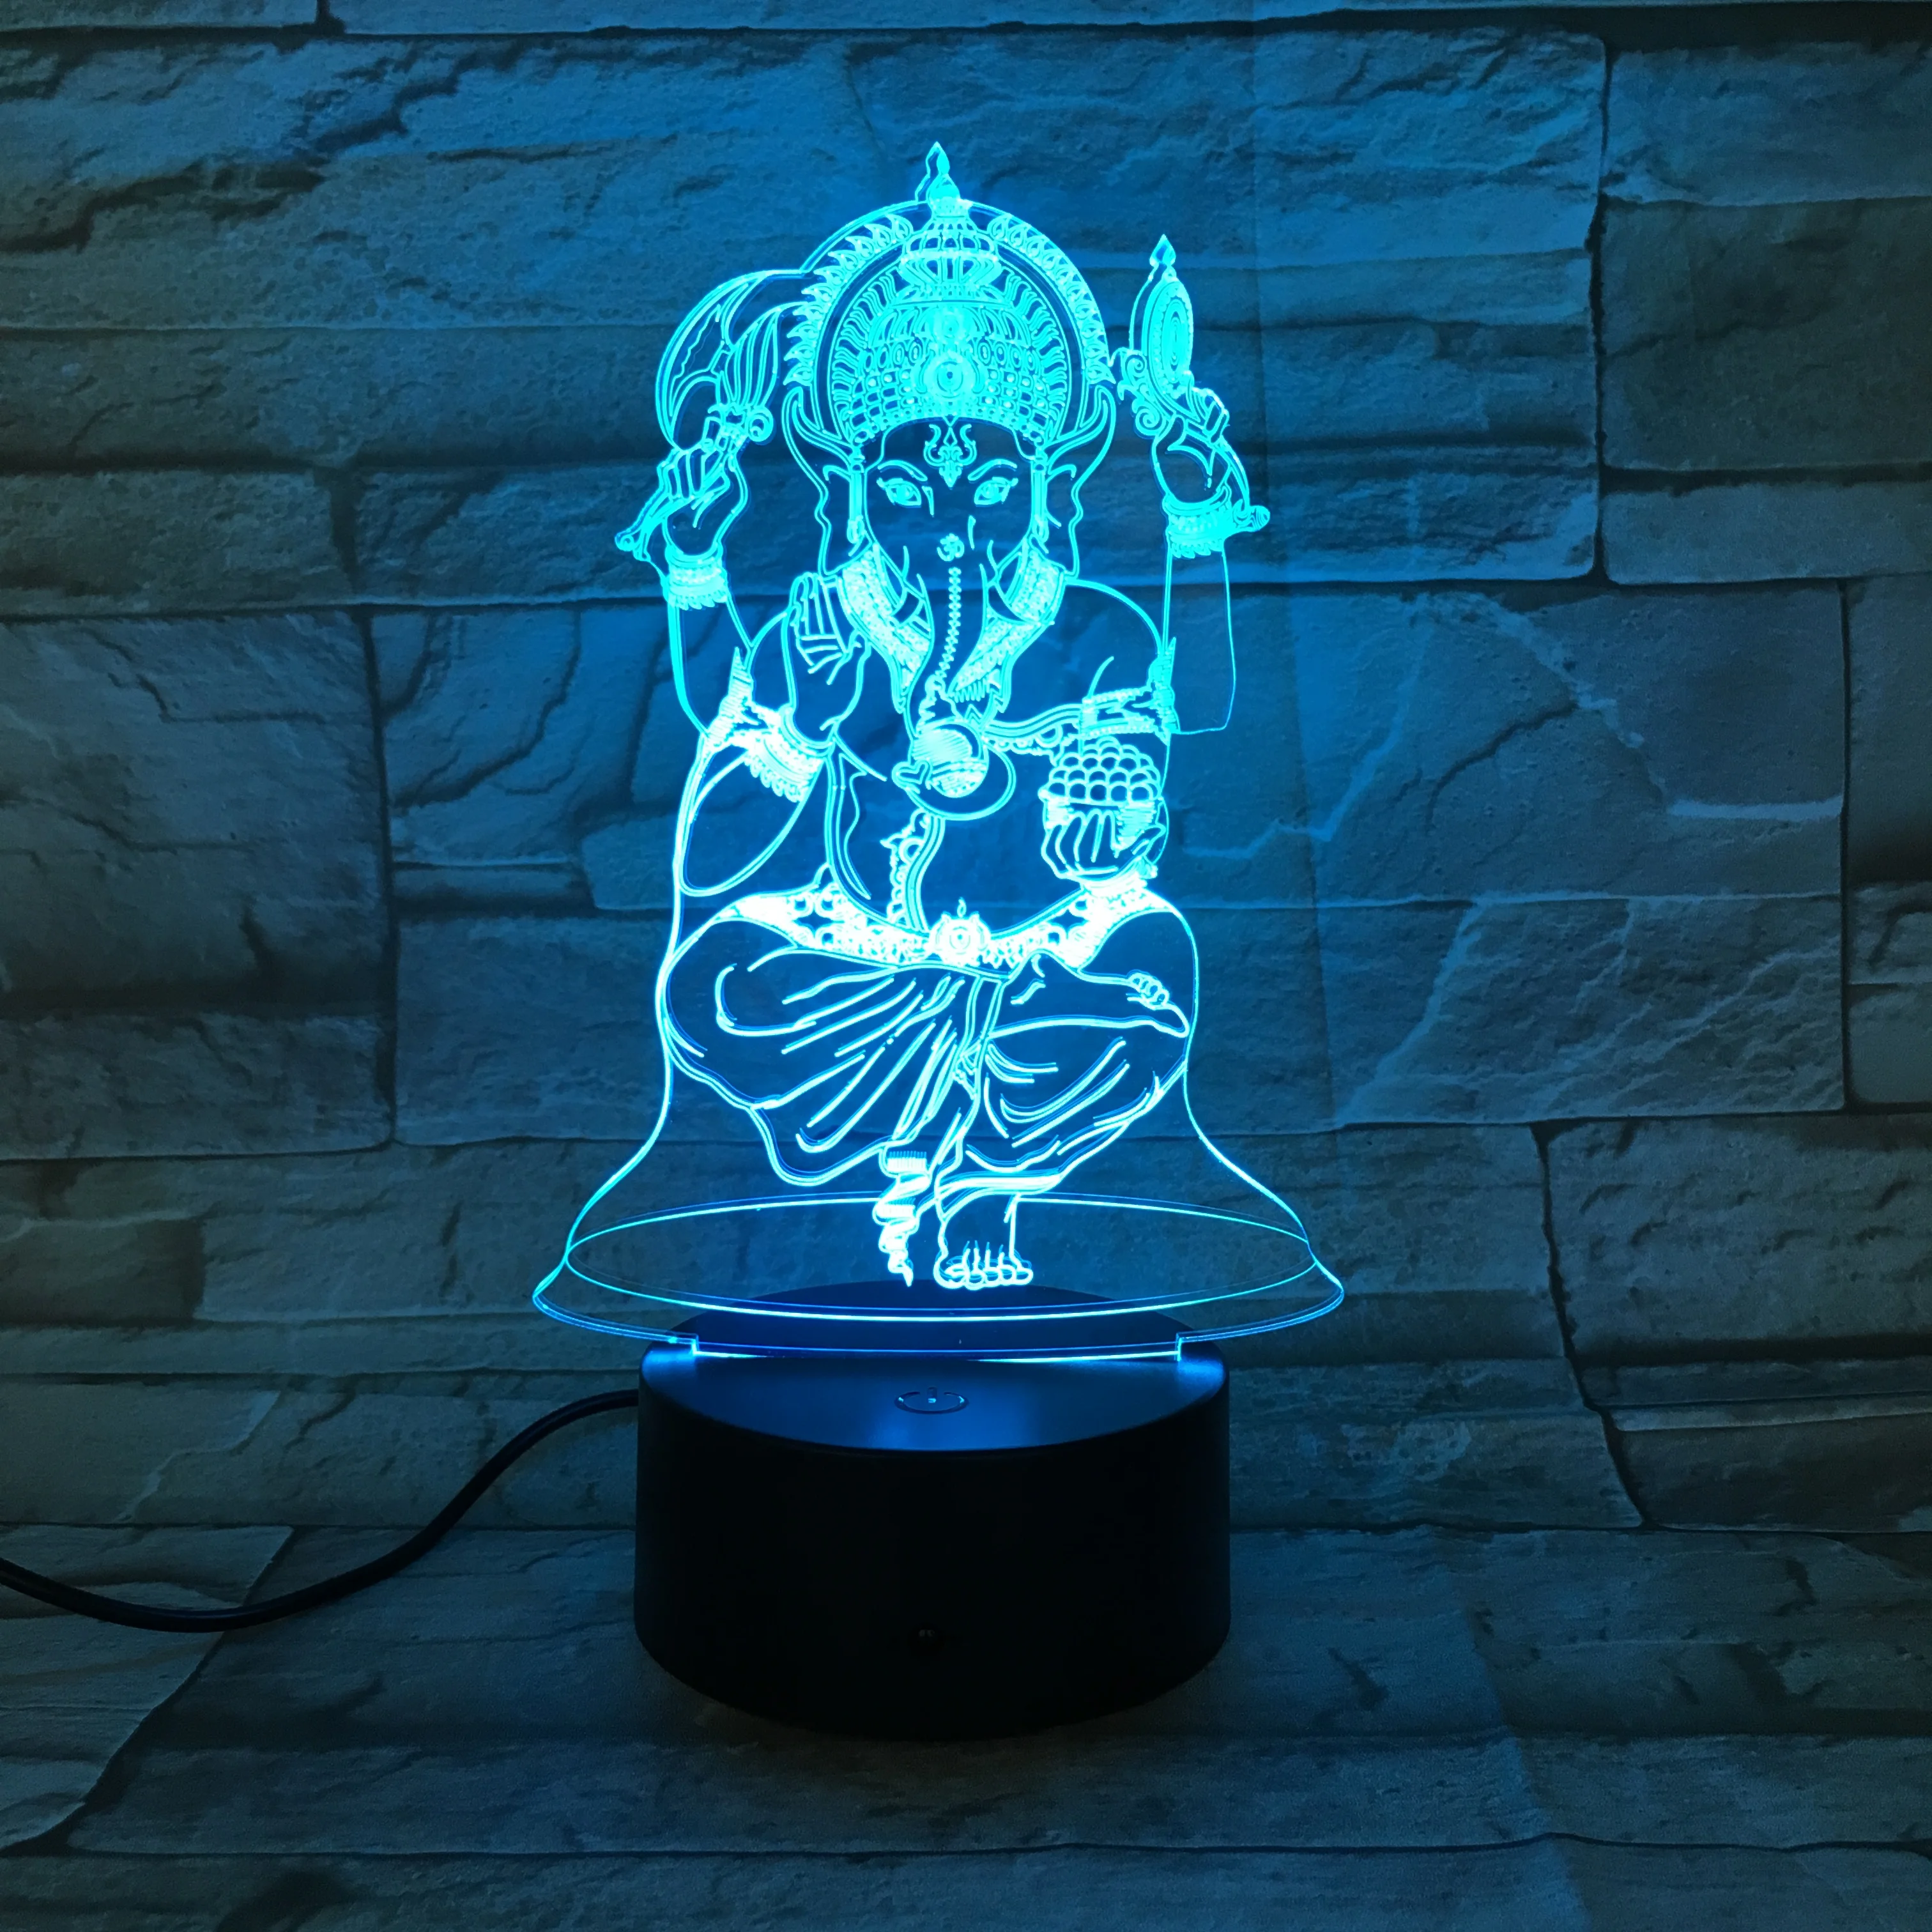 WOW модель Лев 3D ночник-иллюзия СВЕТОДИОДНЫЙ Красочный вспышка сенсорный свет настольная лампа игра фигурка игрушки дропшиппинг 2876